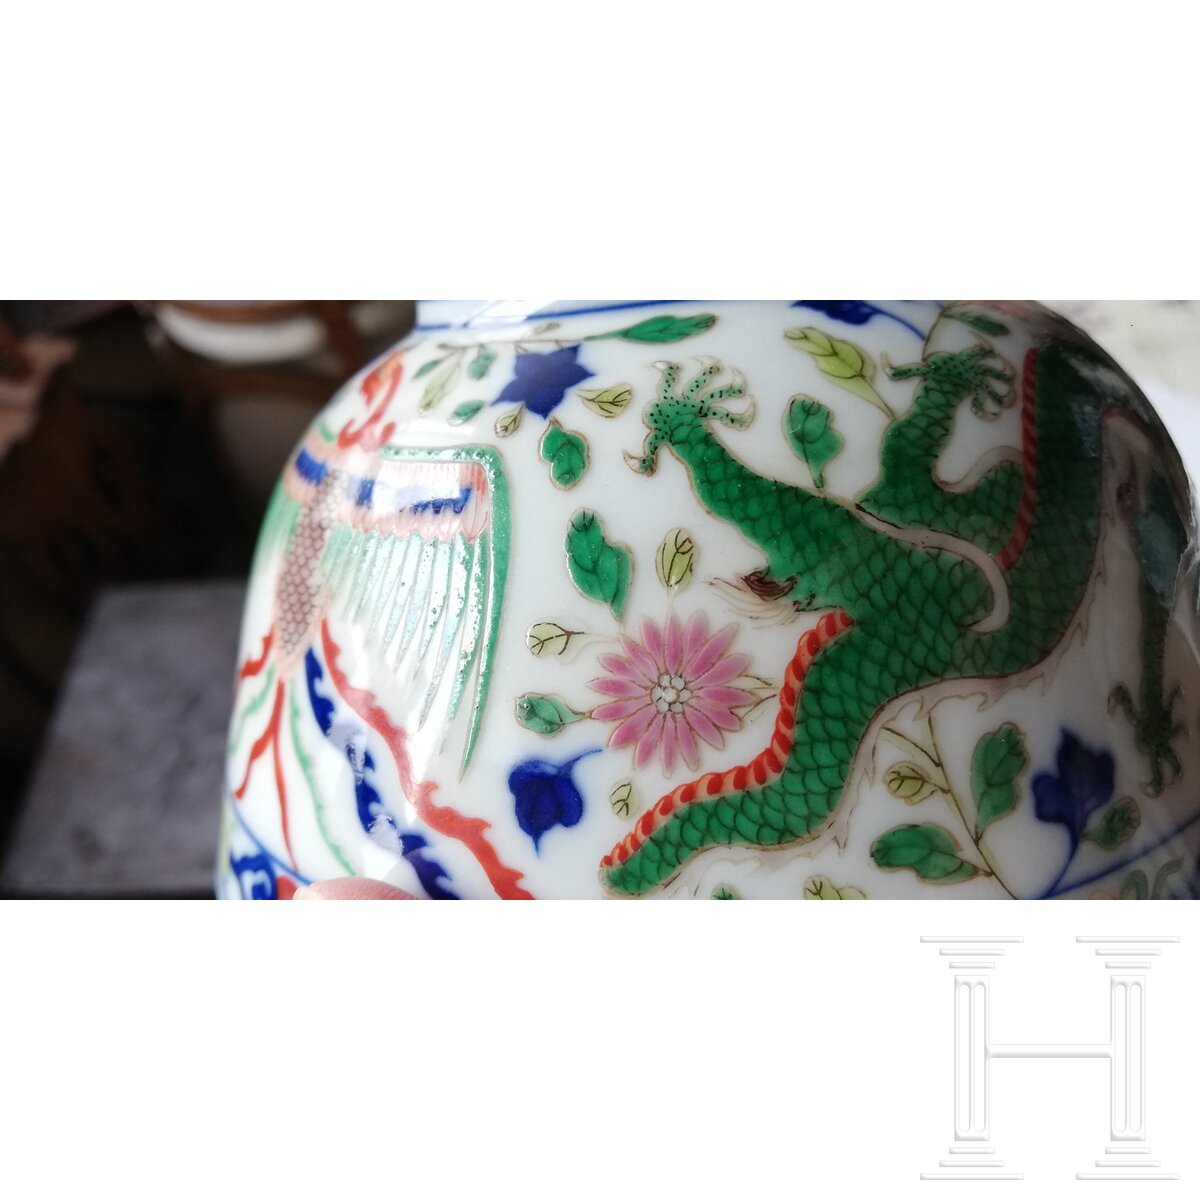 Doucai-Drachenschale mit Kangxi-Marke, wohl aus dieser Epoche - Image 19 of 20